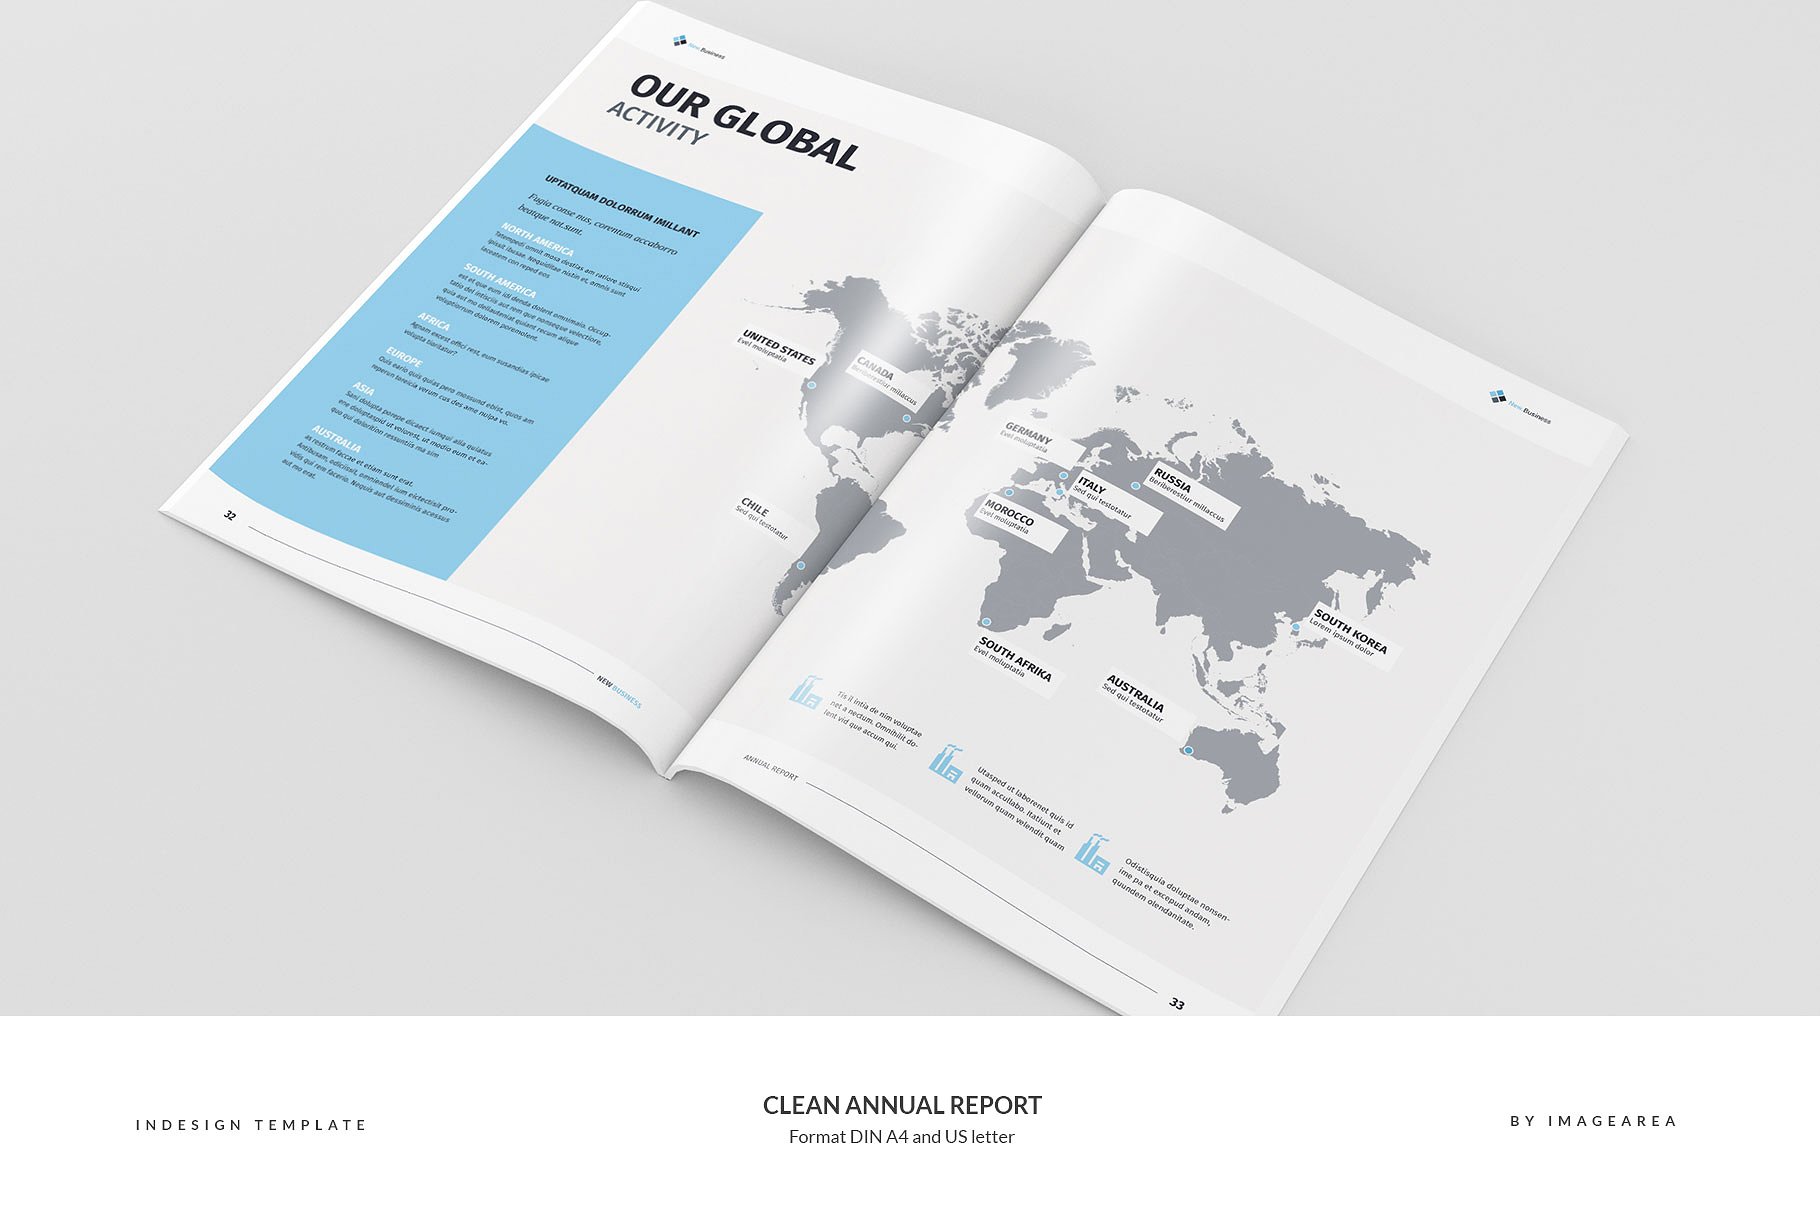 简洁专业的年报模板 Clean Annual Report插图(16)